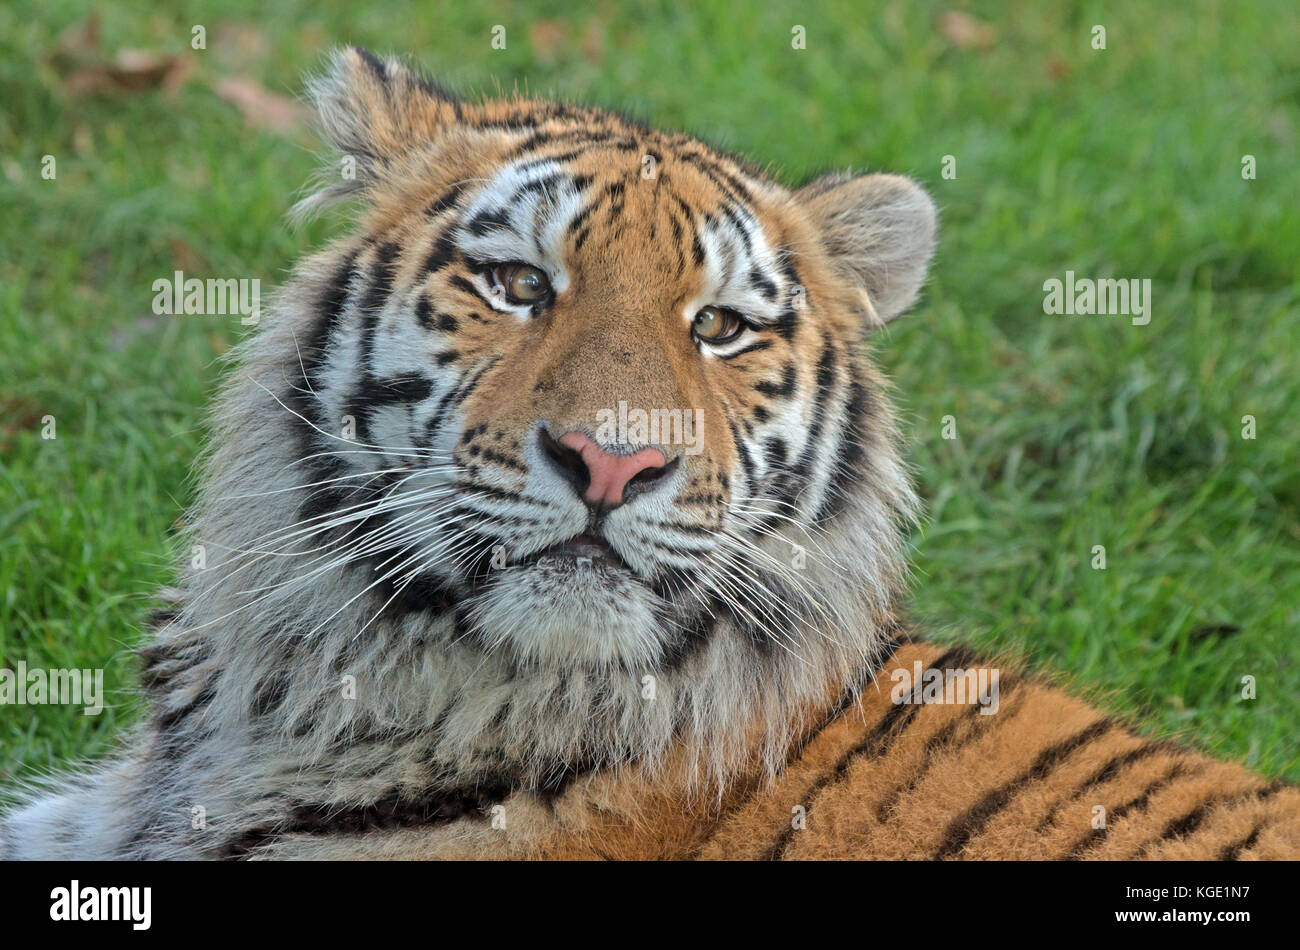 O di amur tigre siberiana panthera tigris altaica captive Foto Stock